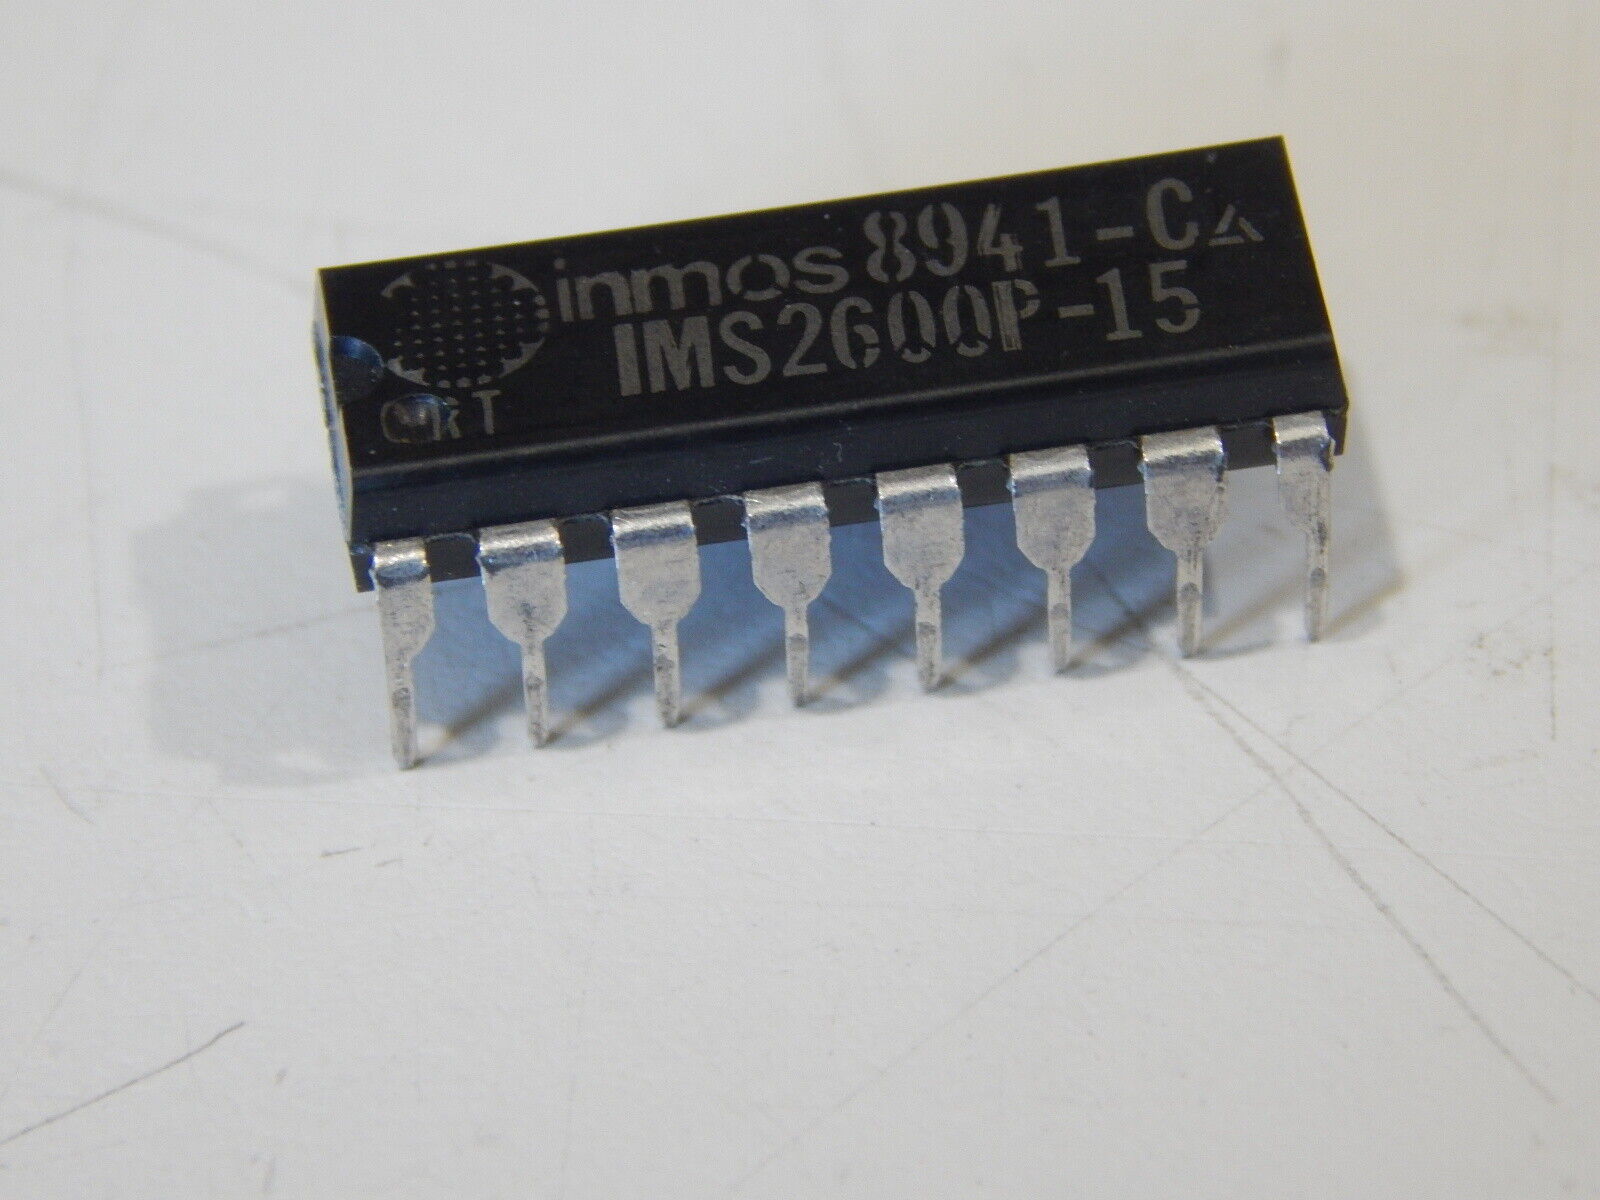 INMOS IMS2600P-15 Dynamic RAM Page Mode 64K x 1 16 Pin DIP IC - FAST SHIPPING